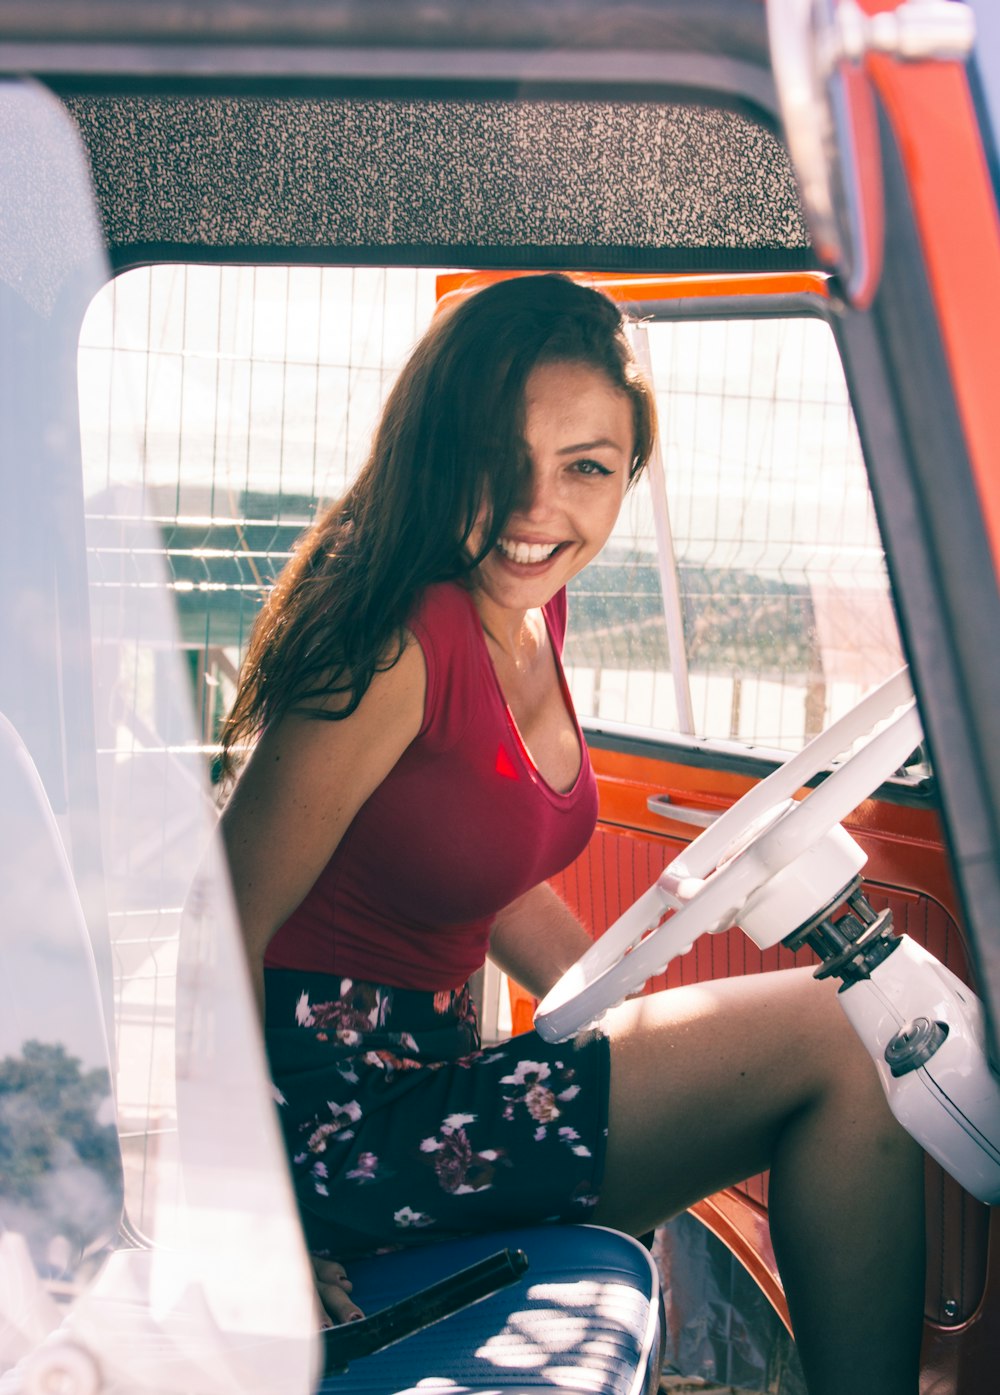 Frau trägt rotes Tanktop und mehrfarbigen Blumenrock, während sie im Fahrzeug sitzt